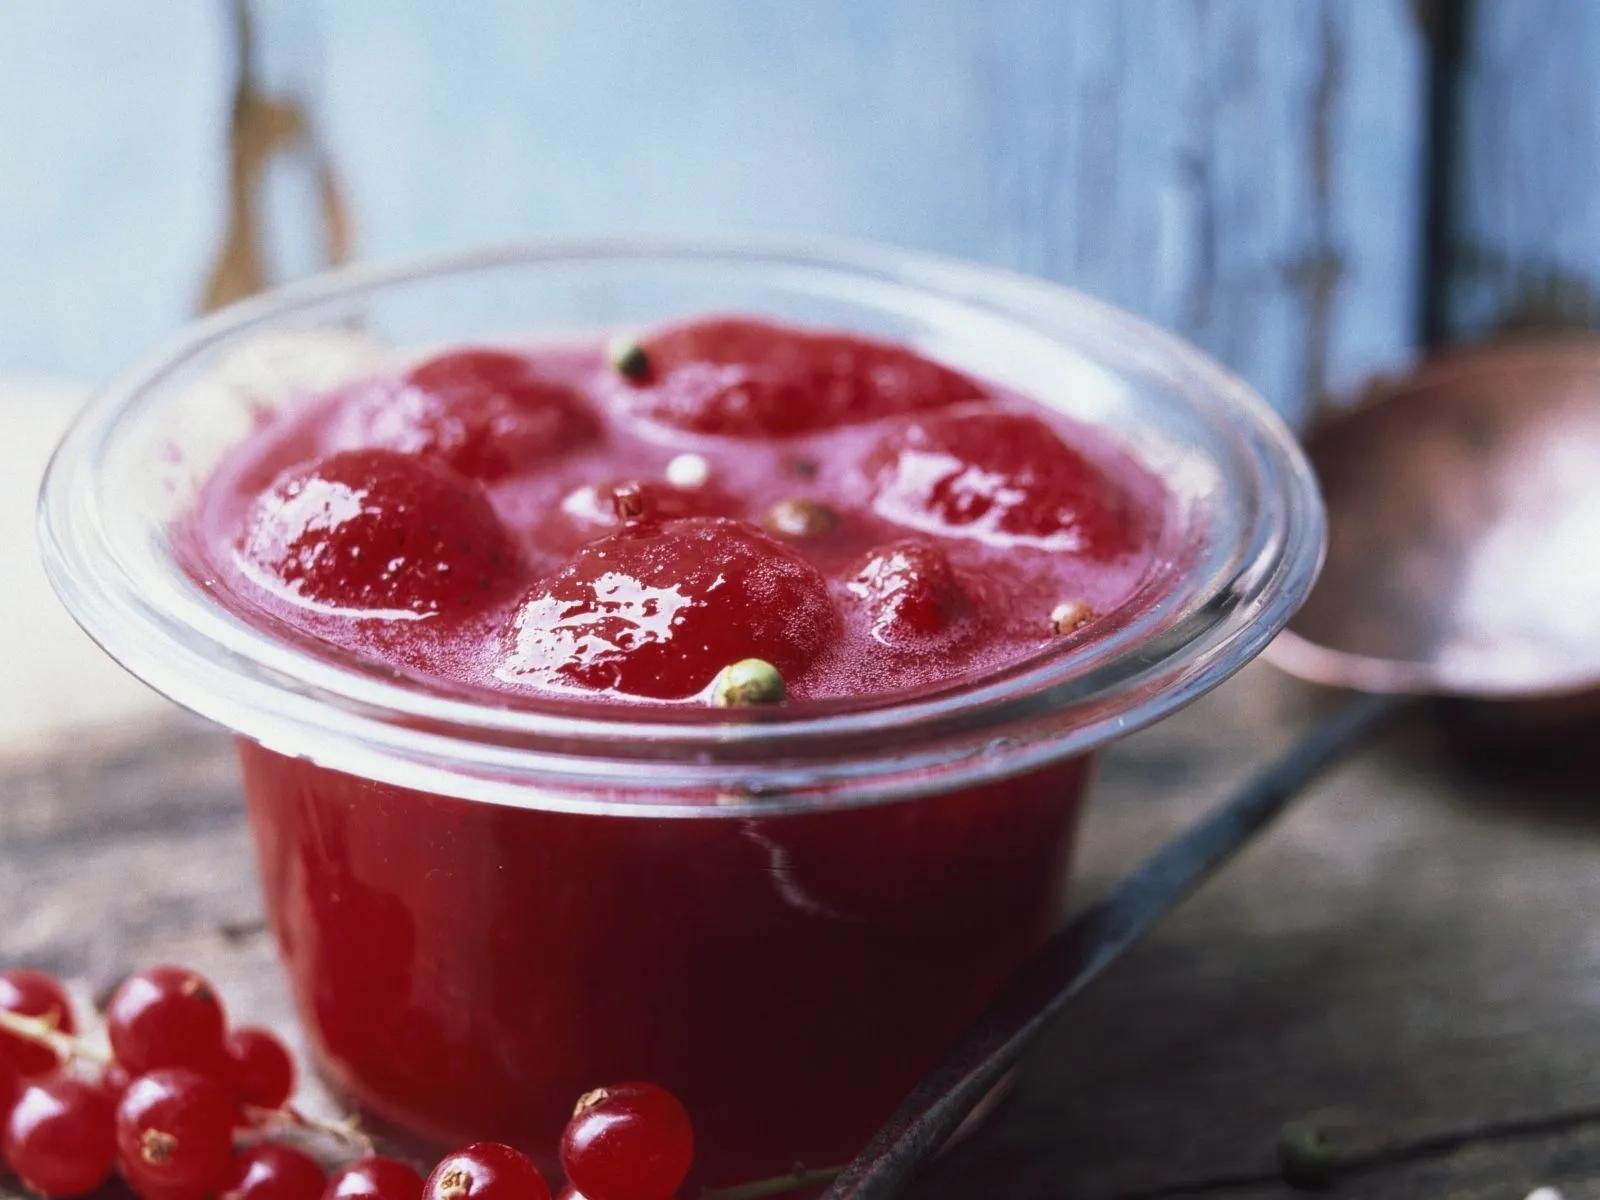 Johannisbeer-Erdbeer-Marmelade mit Pfeffer Rezept | EAT SMARTER